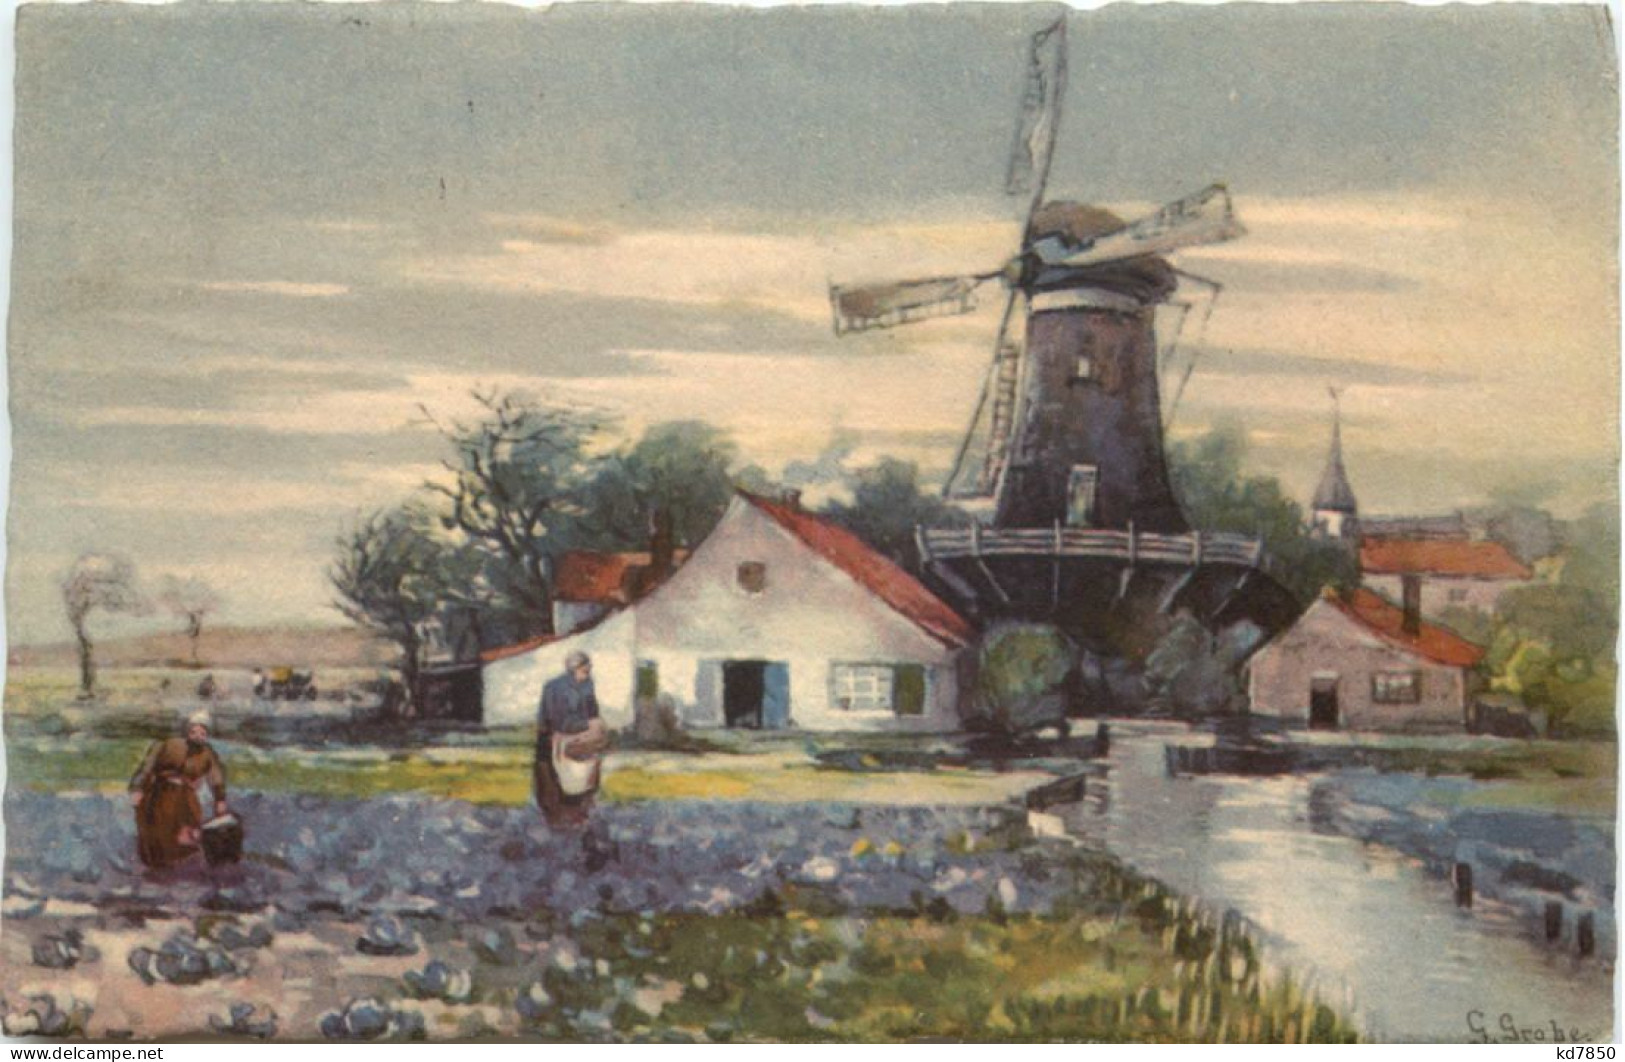 Windmühle - Windmolens